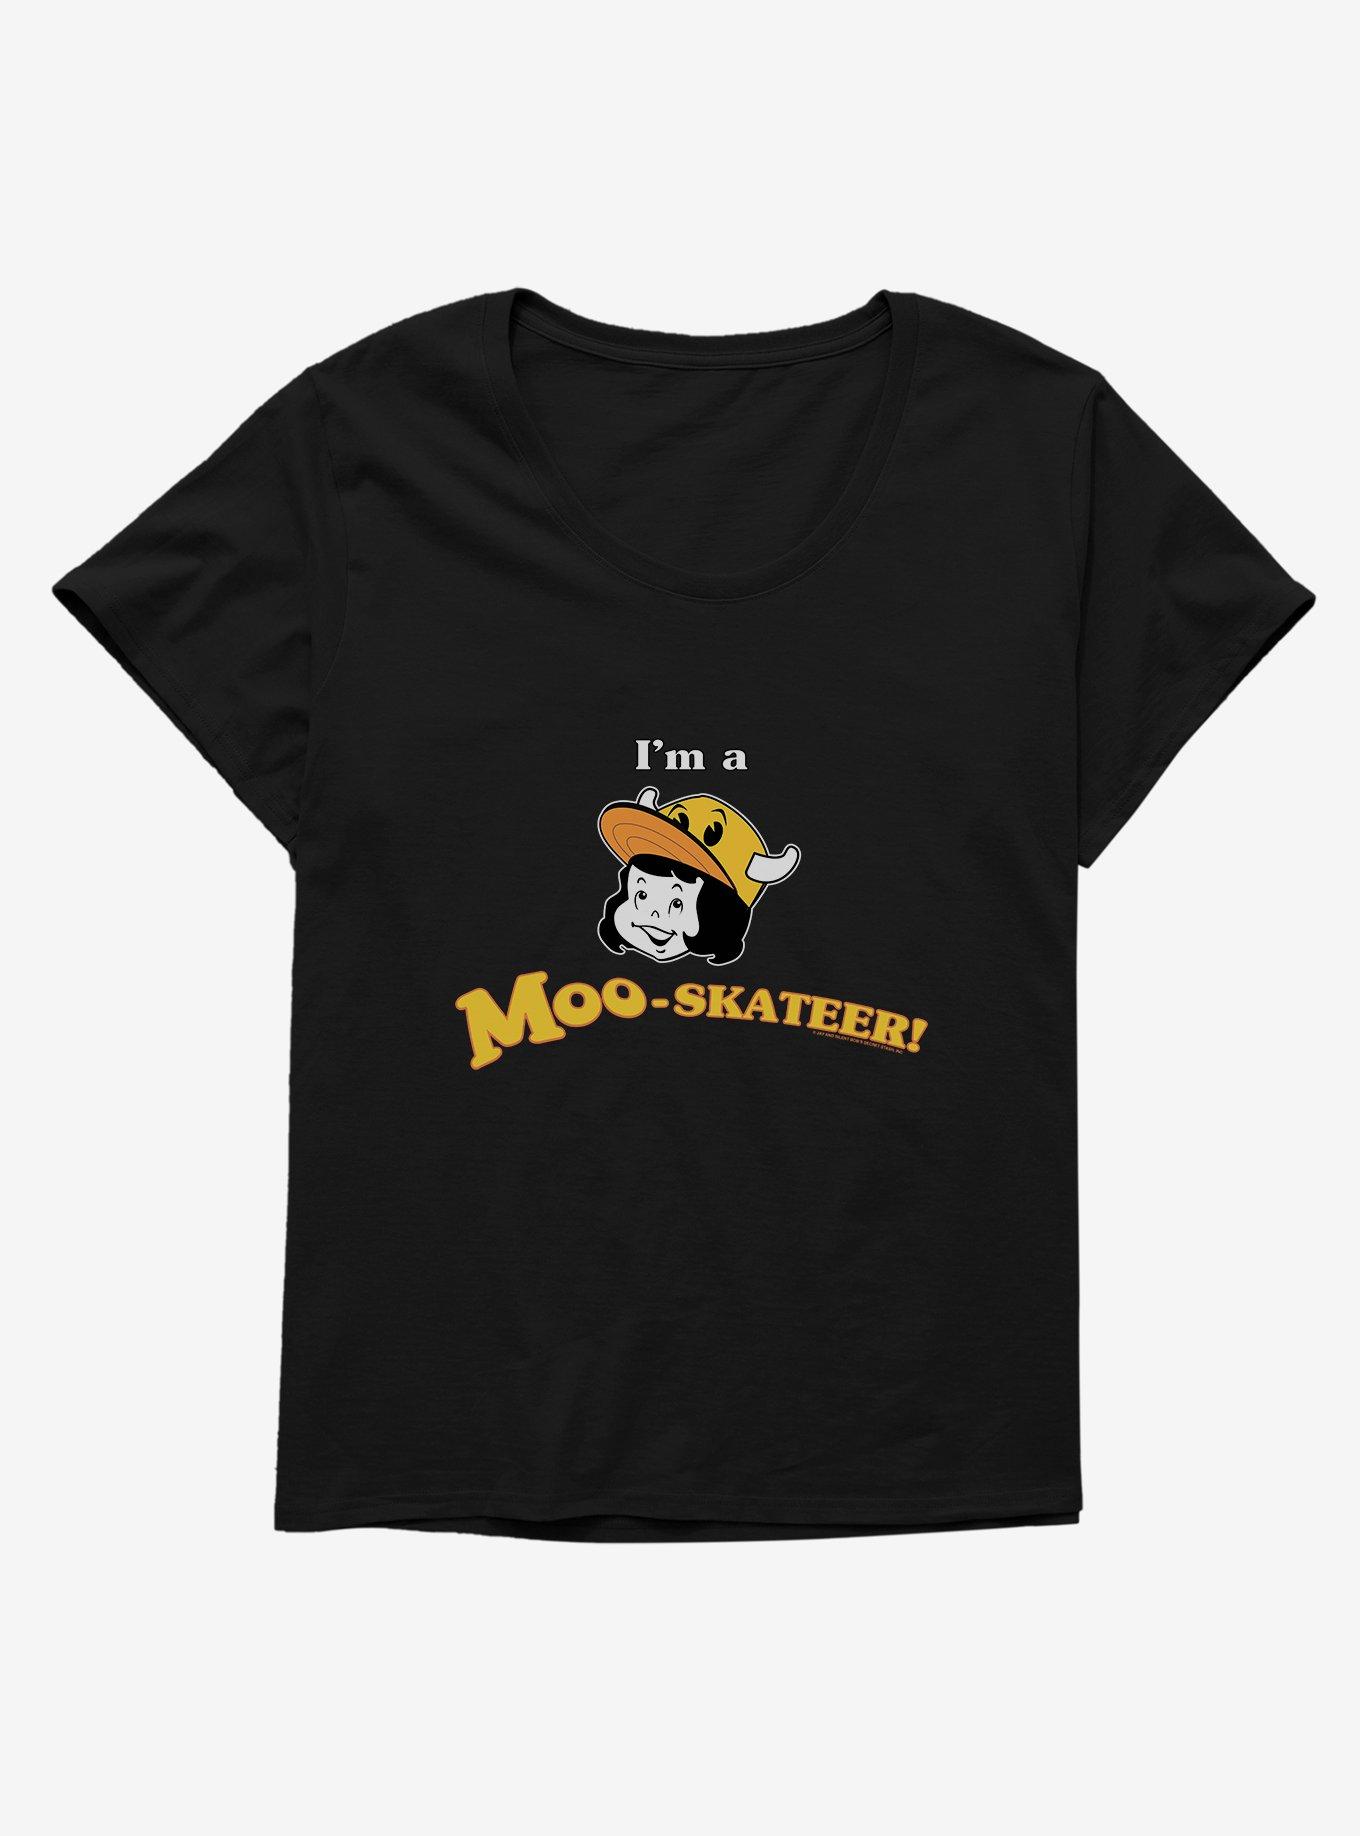 Clerks 3 Moo-Skateer! Girl Girls T-Shirt Plus